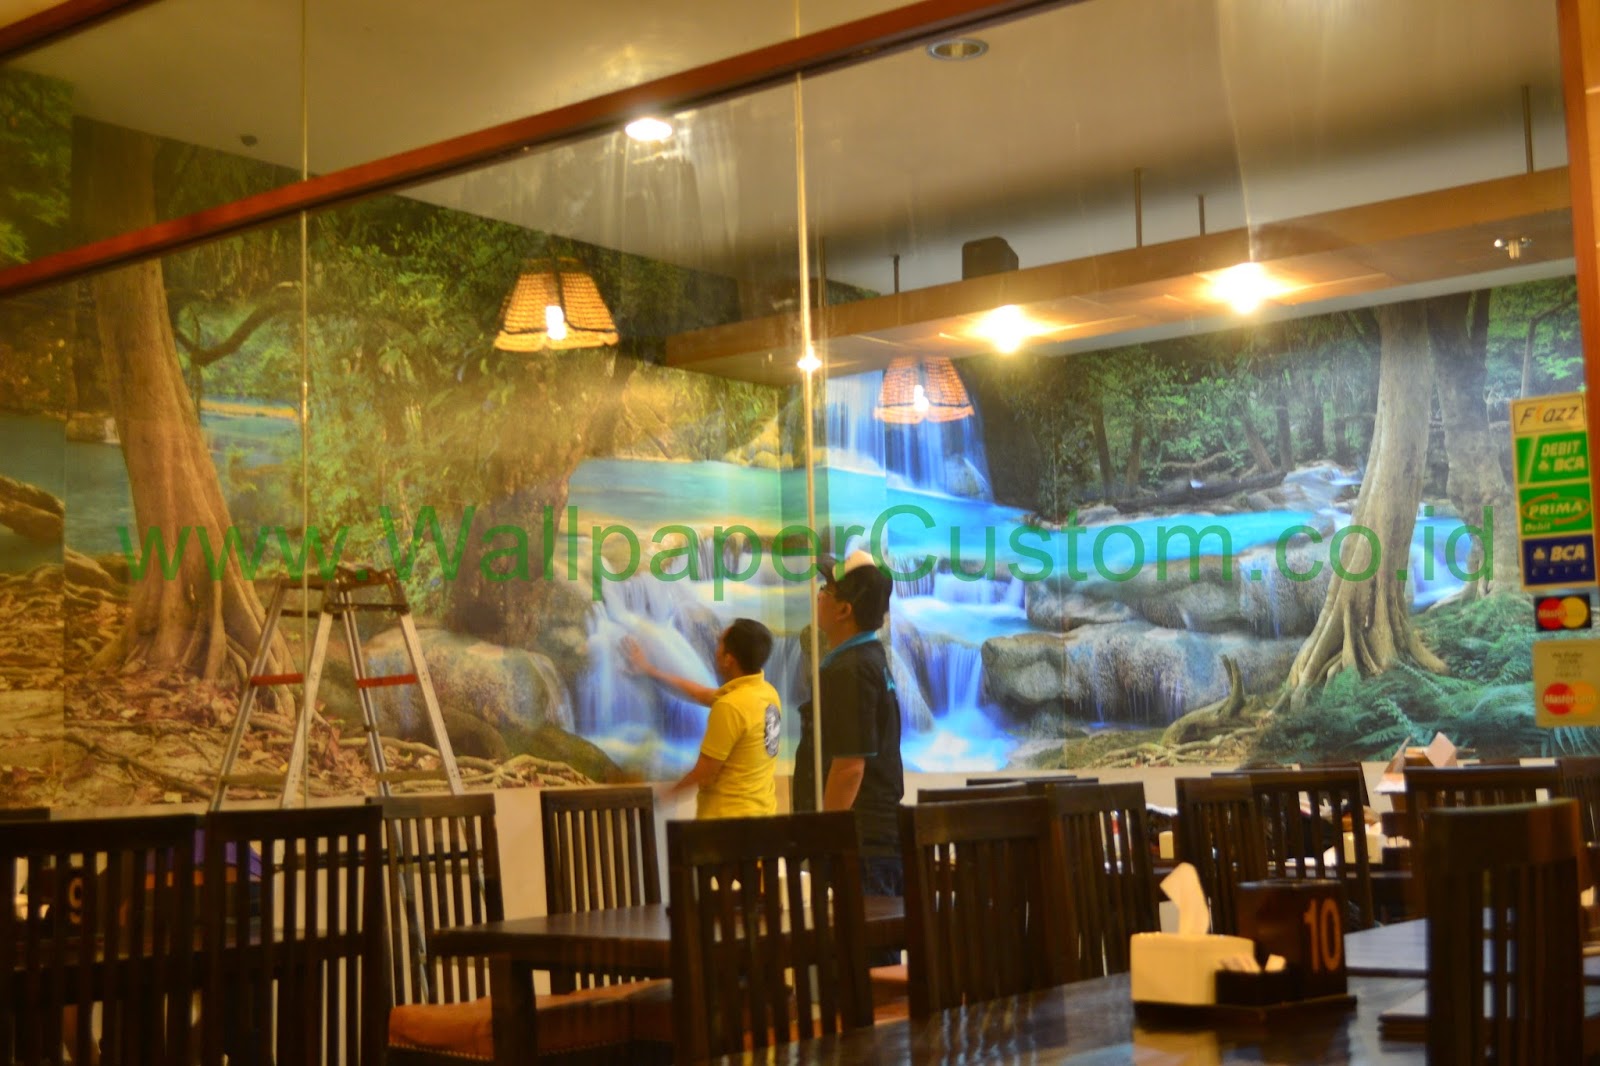 Jual Wallpaper Dinding 3d Pemandangan Alam Di Jakarta Wallpaper